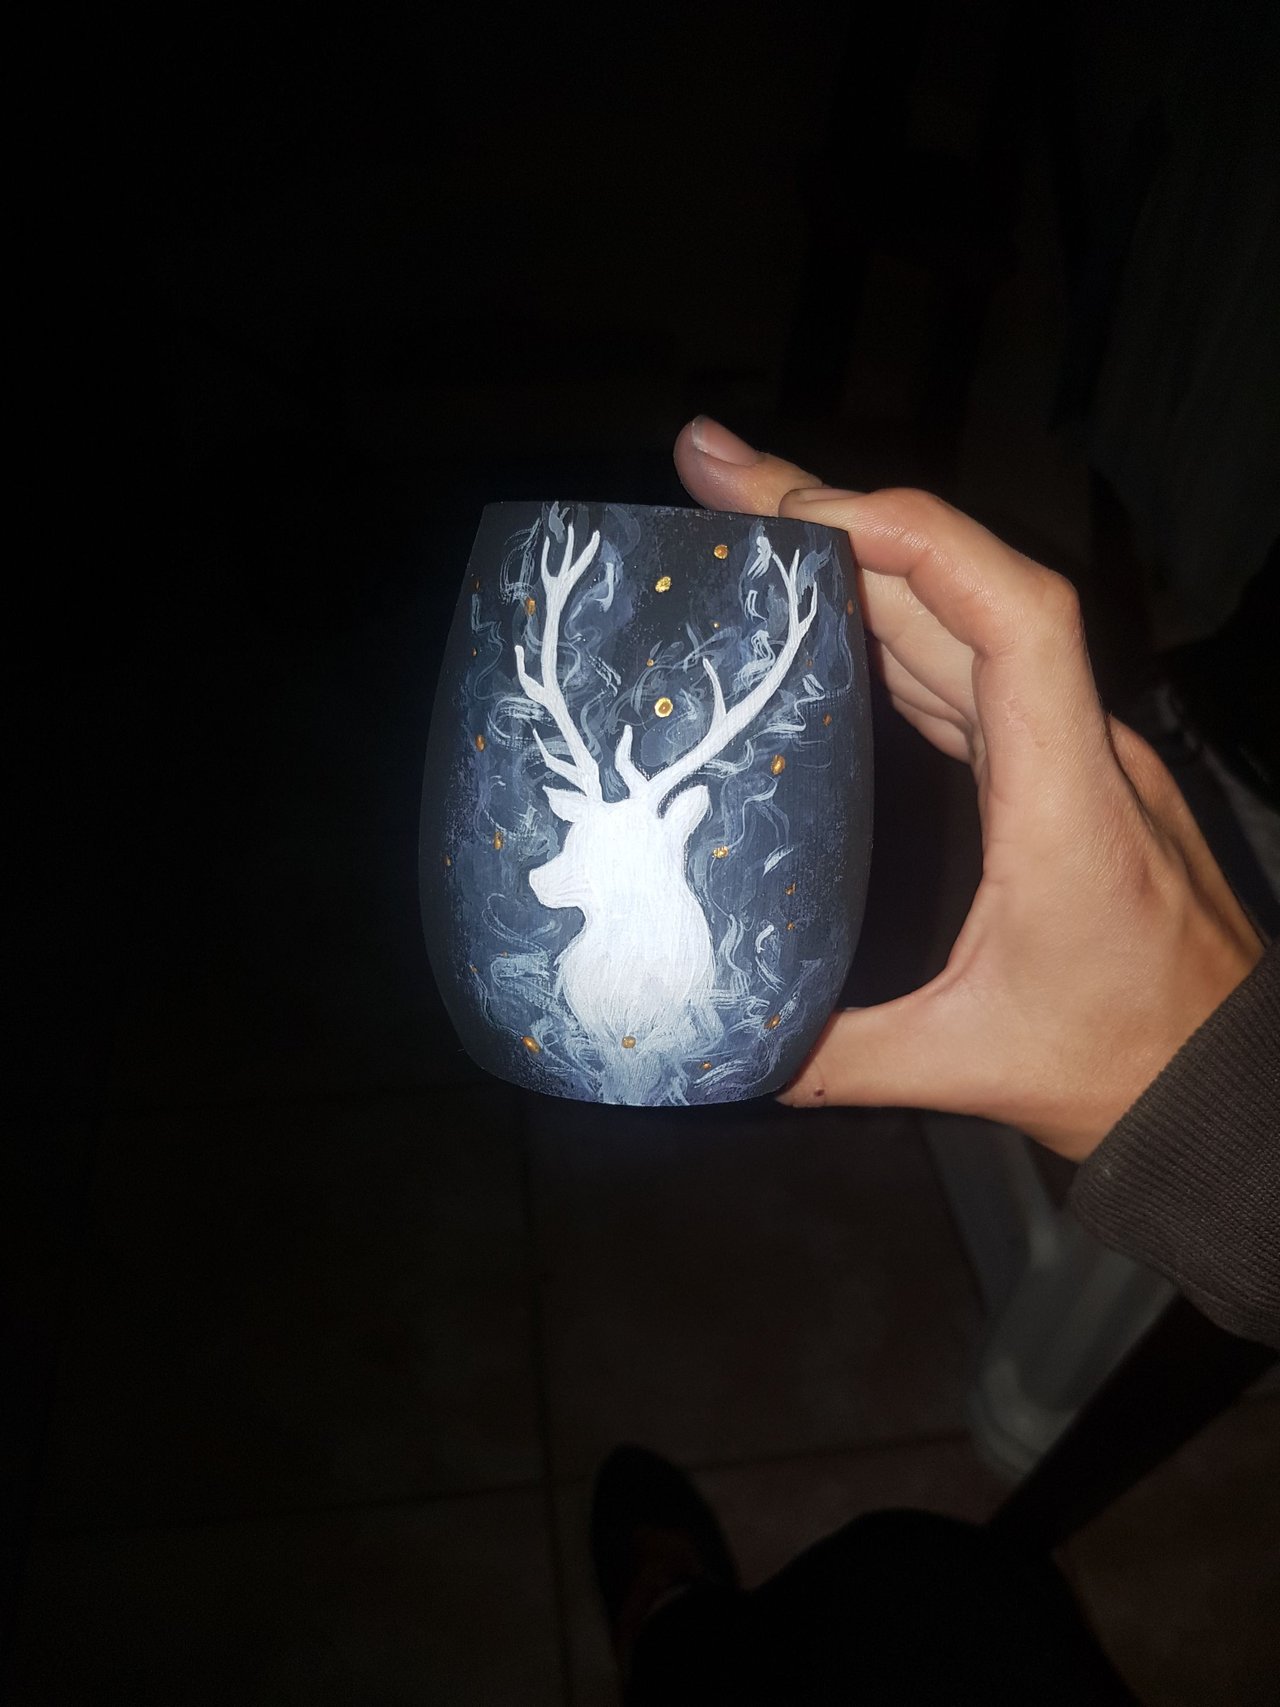 Figuras de Harry Potter en cerámica pintada a mano – Taller de